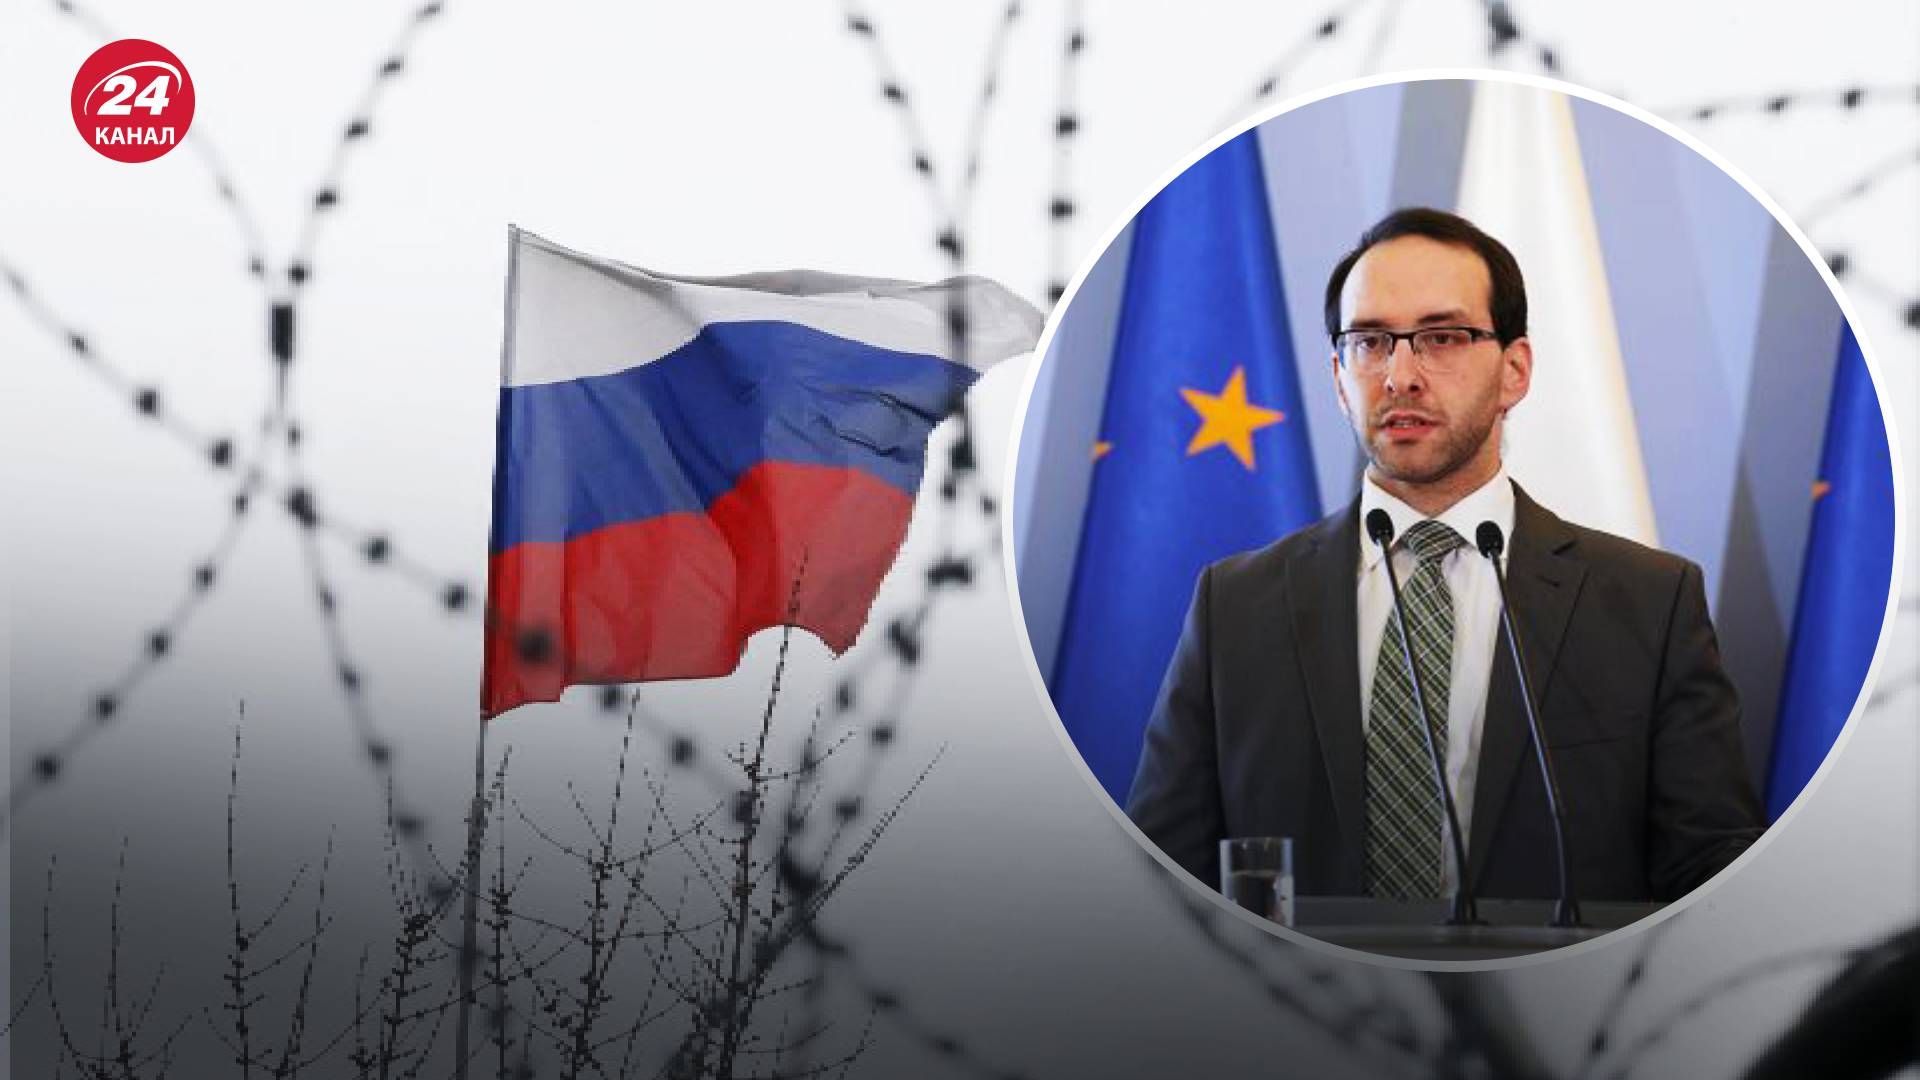 Правительство Польши уверено, что Россия погружается в хаос.